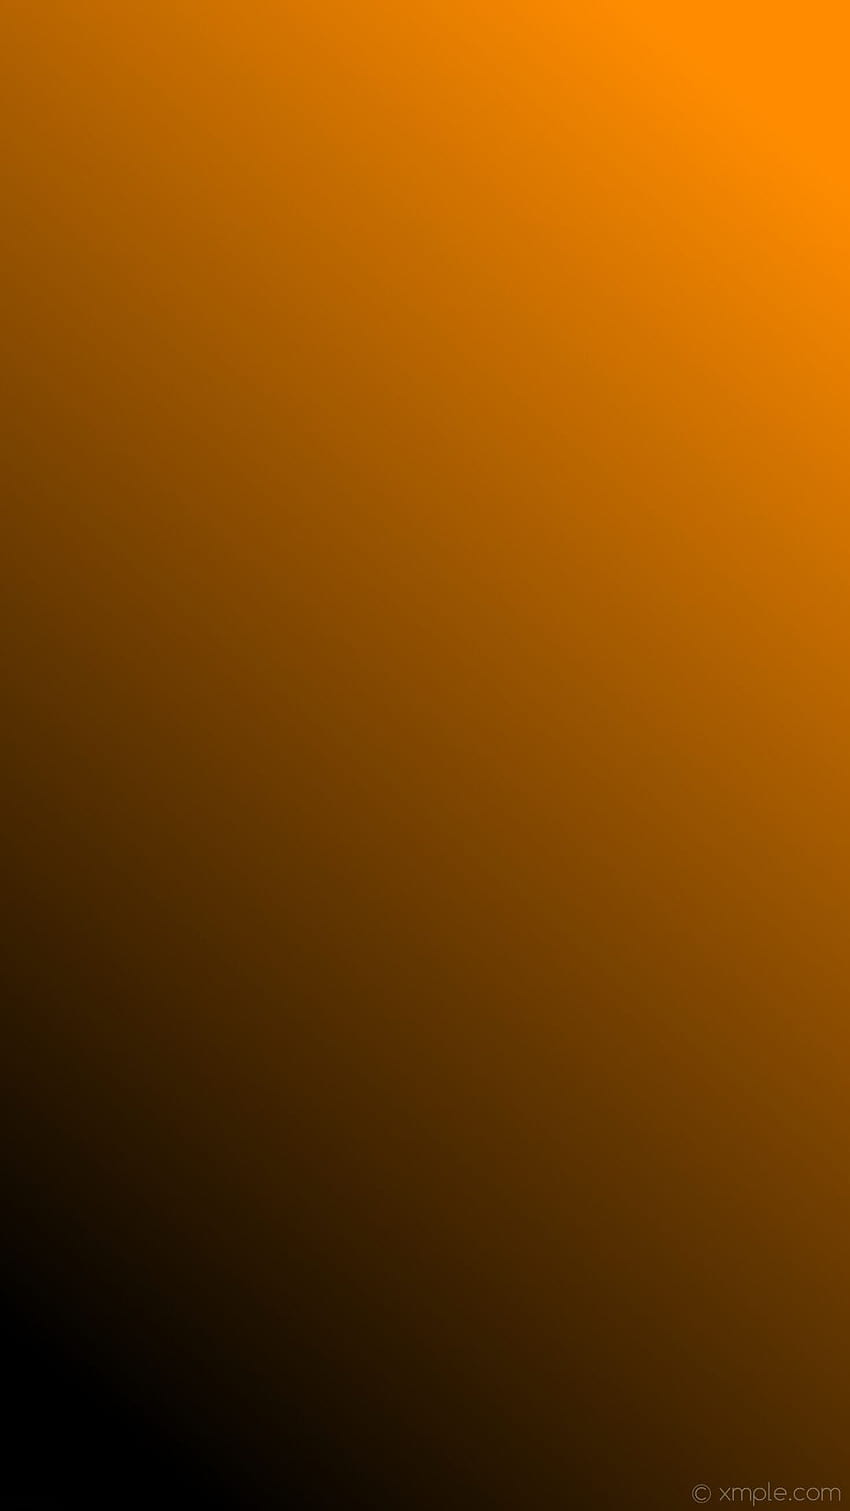 グラデーション オレンジ ブラック リニア ダーク オレンジ - ダーク グレーとオレンジ - -、ダーク ブラウン グラデーション HD電話の壁紙